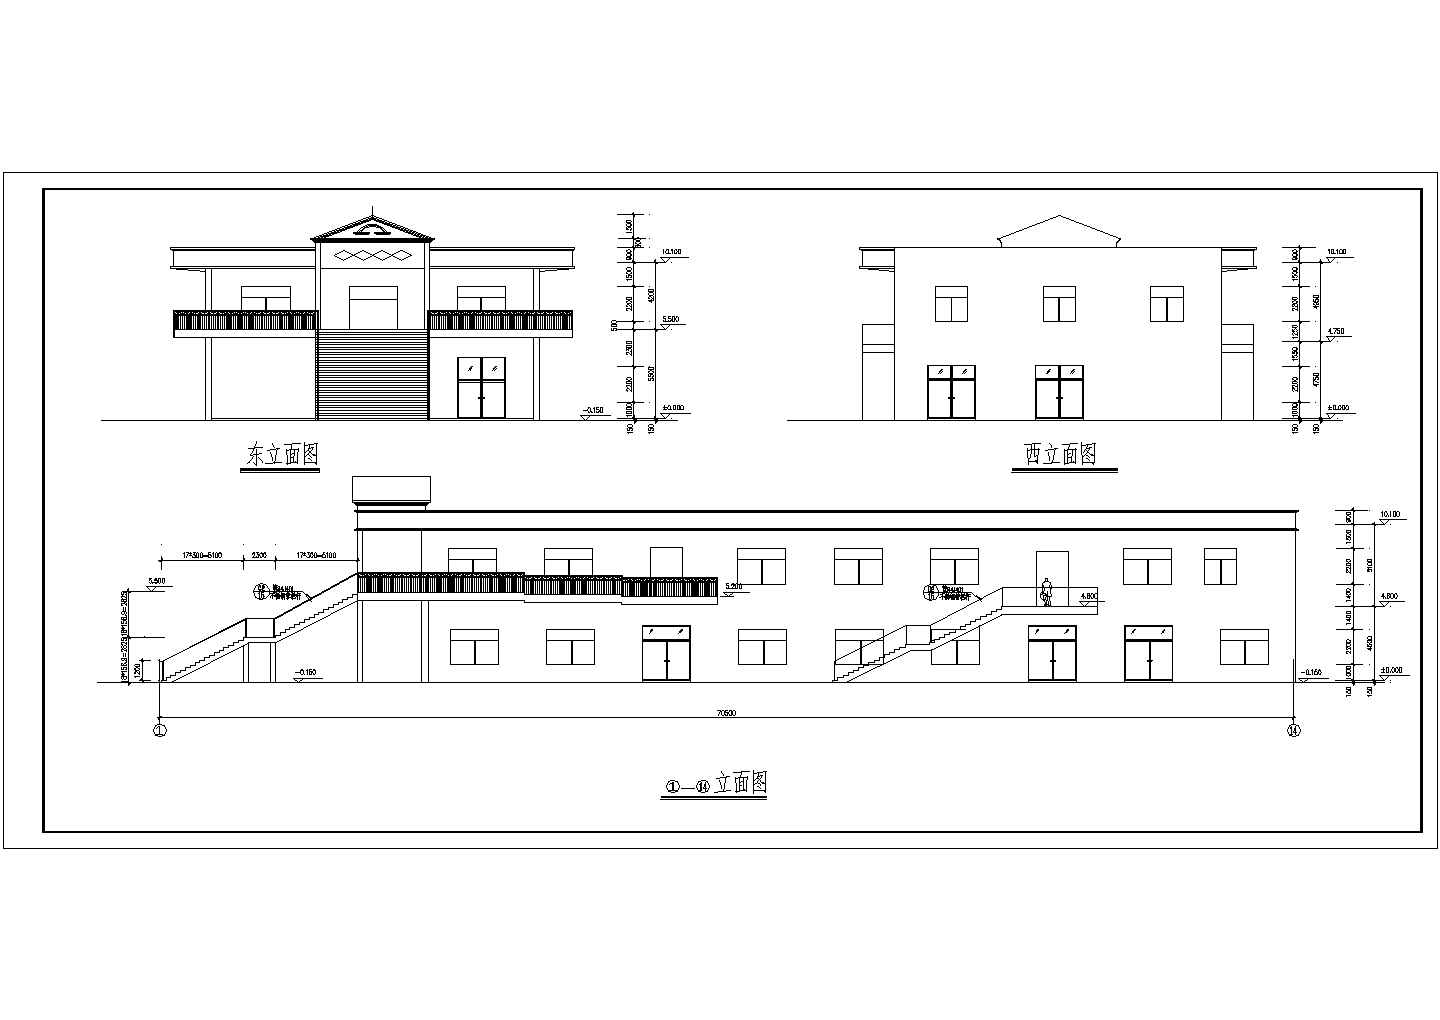 浙江省某大学高校二层食堂综合楼CAD设计施工图纸dwg格式